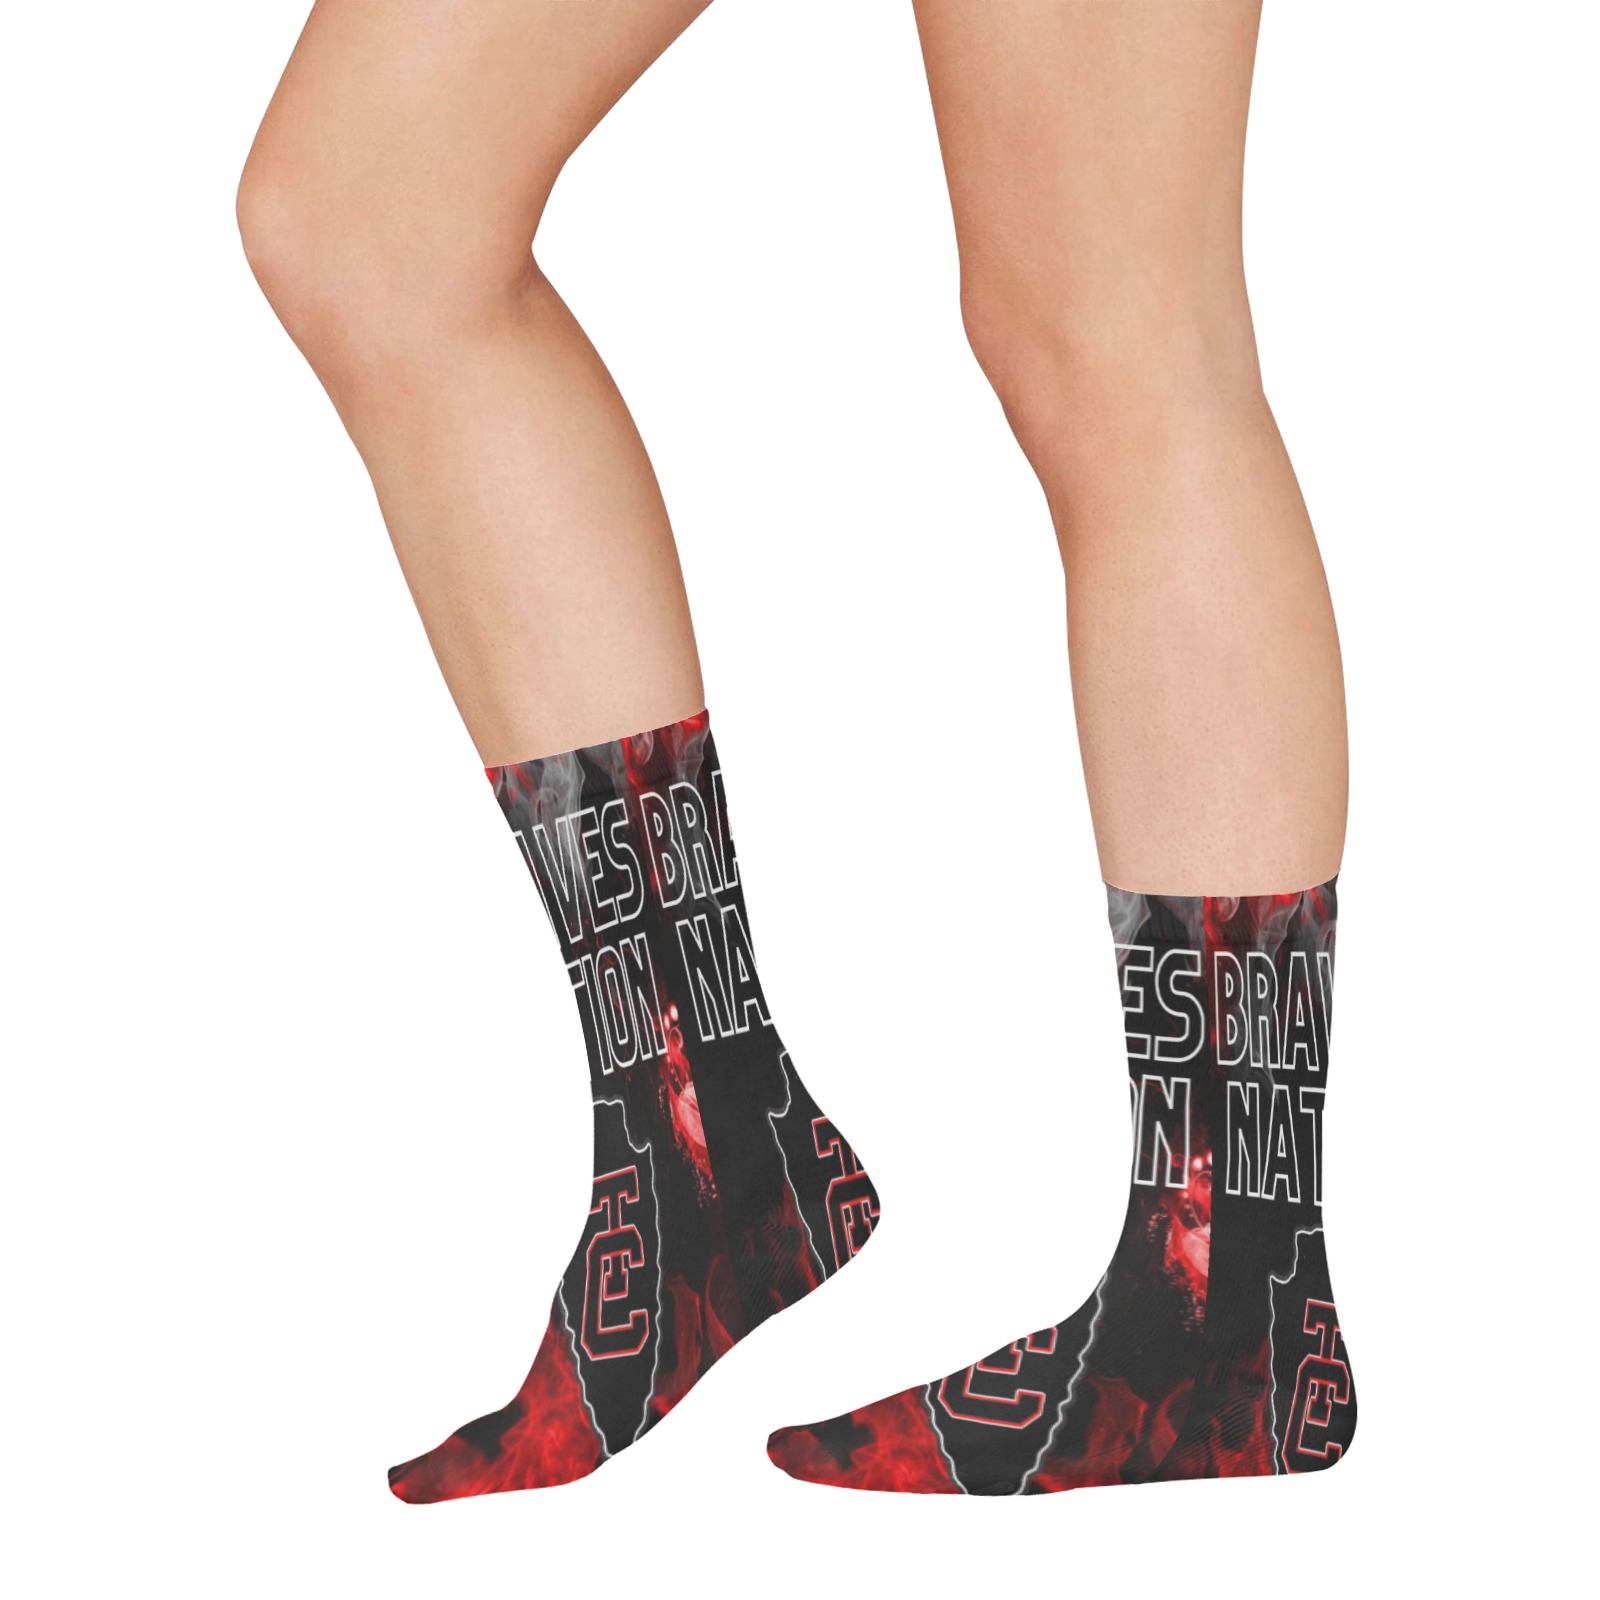 Braves Nation All Over Print Socks for Women